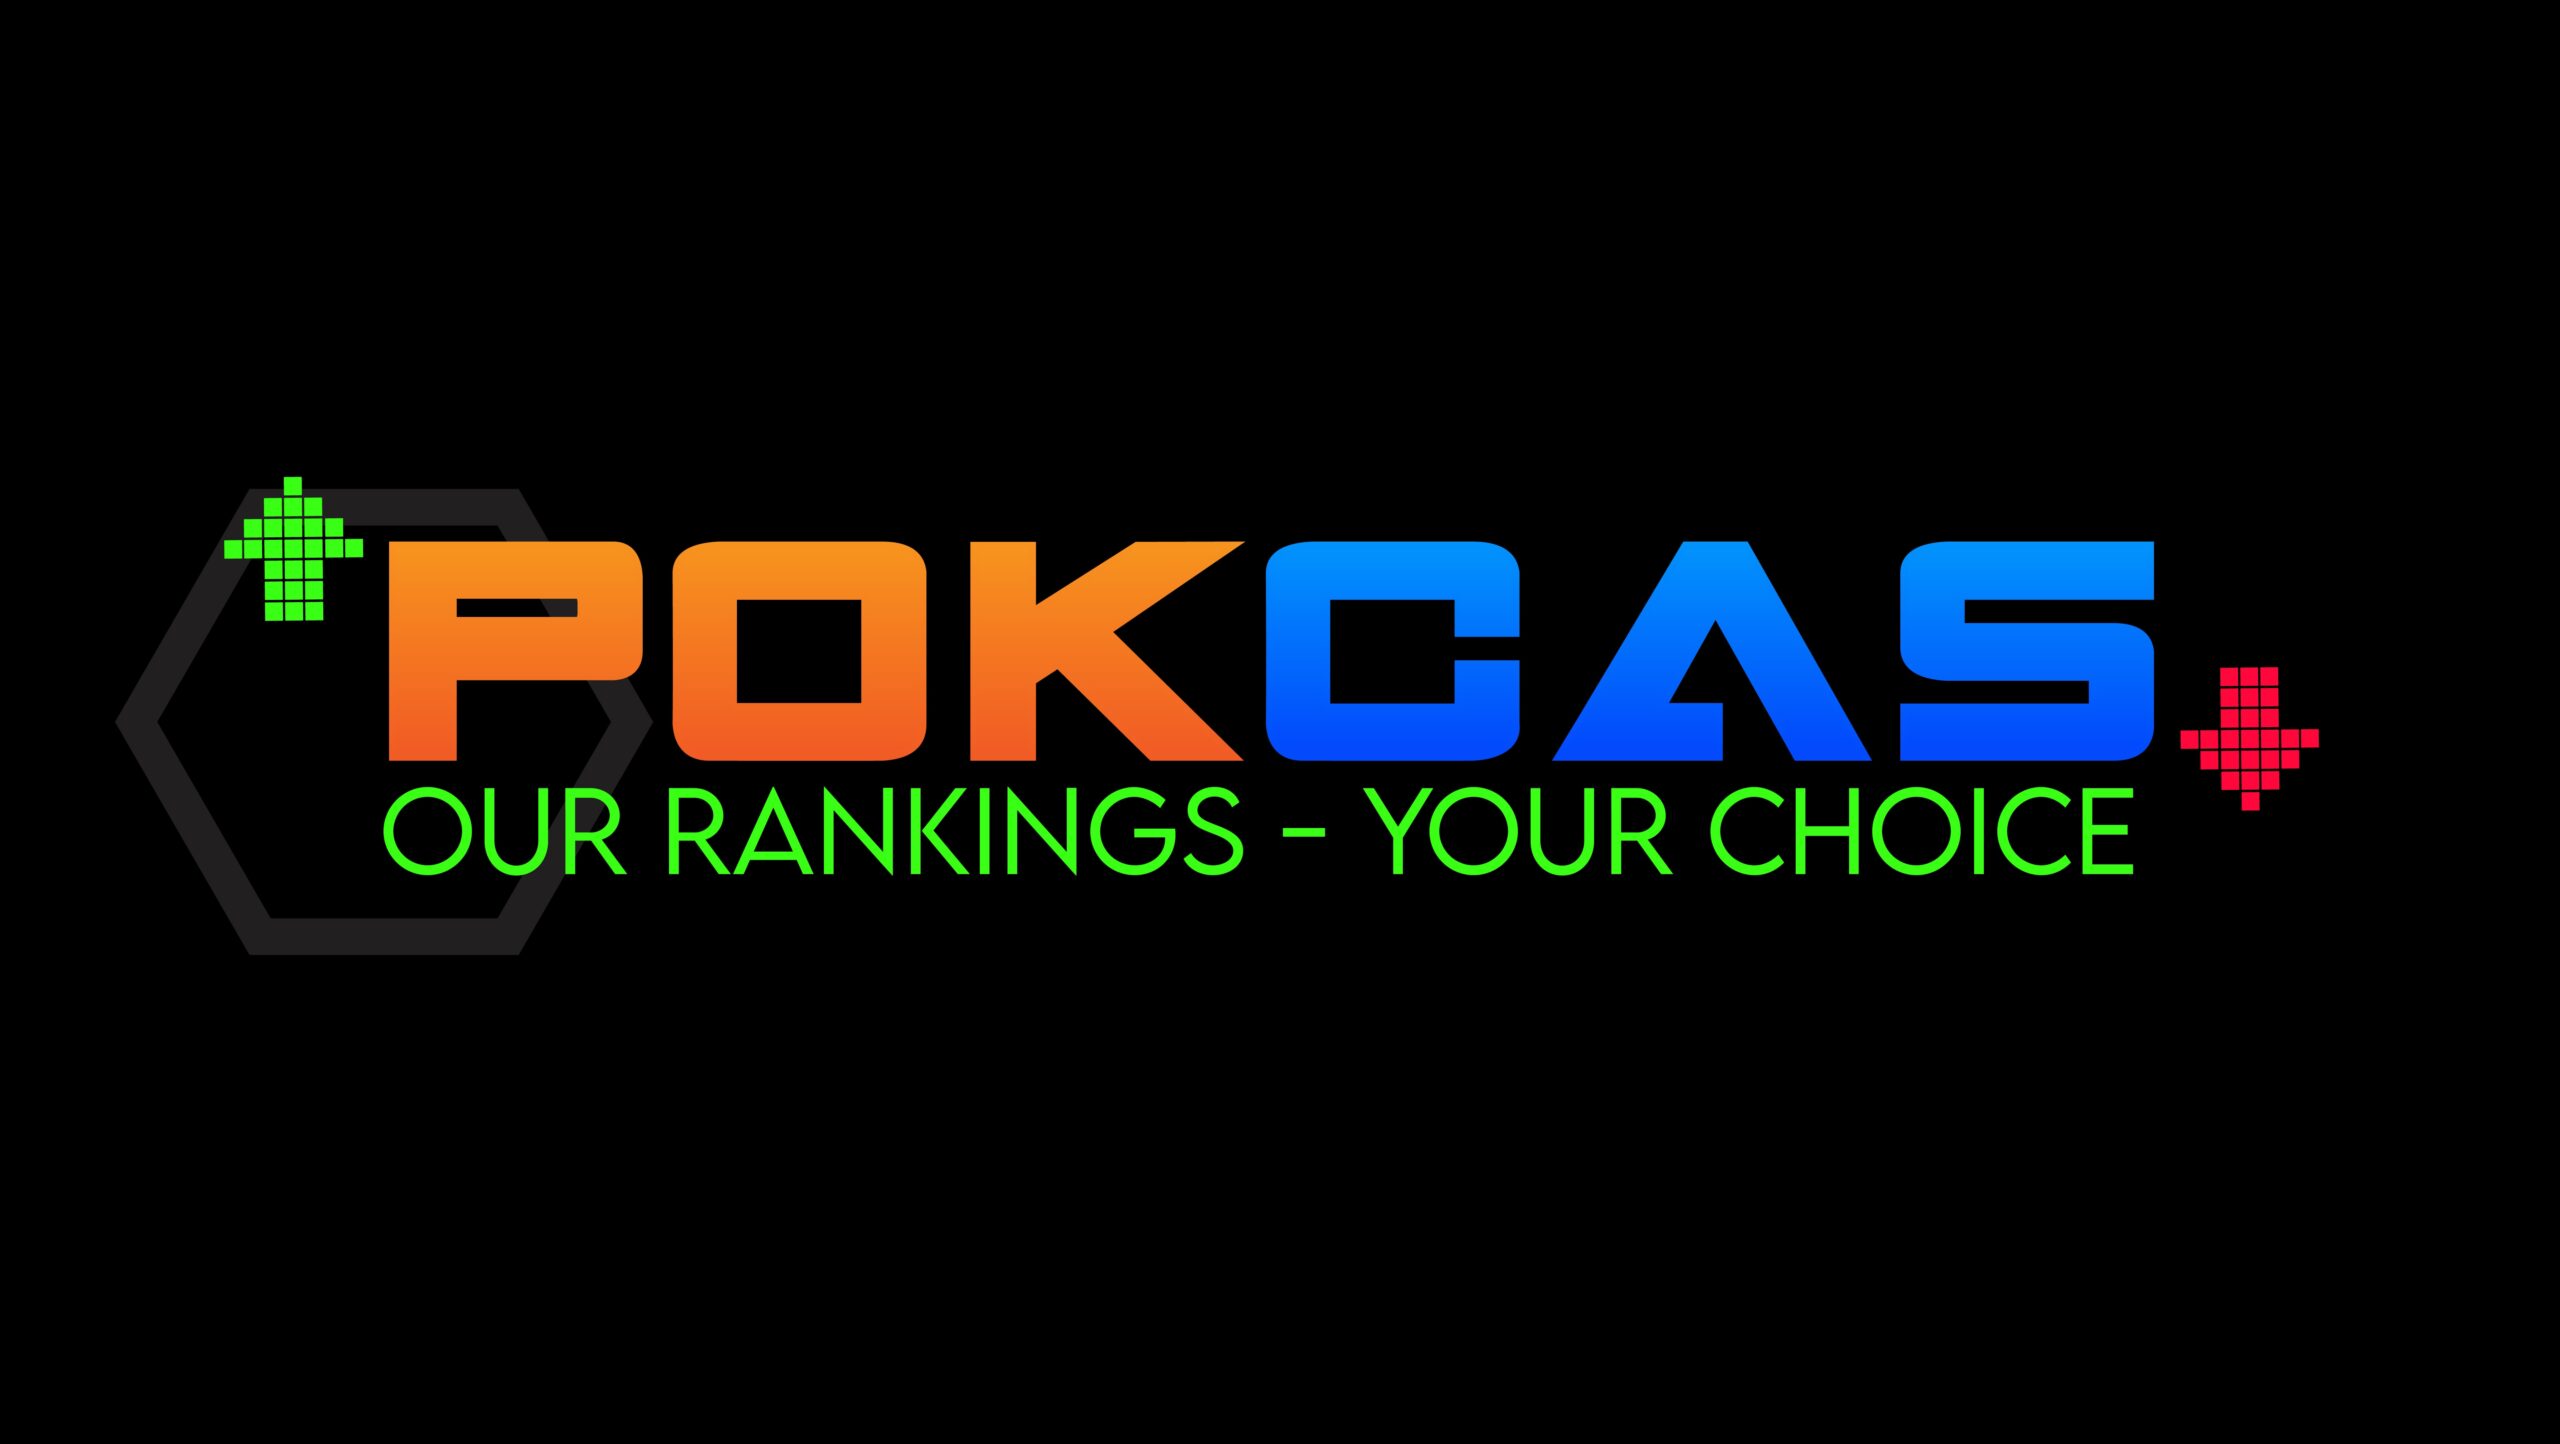 PokCas - Latest High Roller News, Poker & Casino Deals